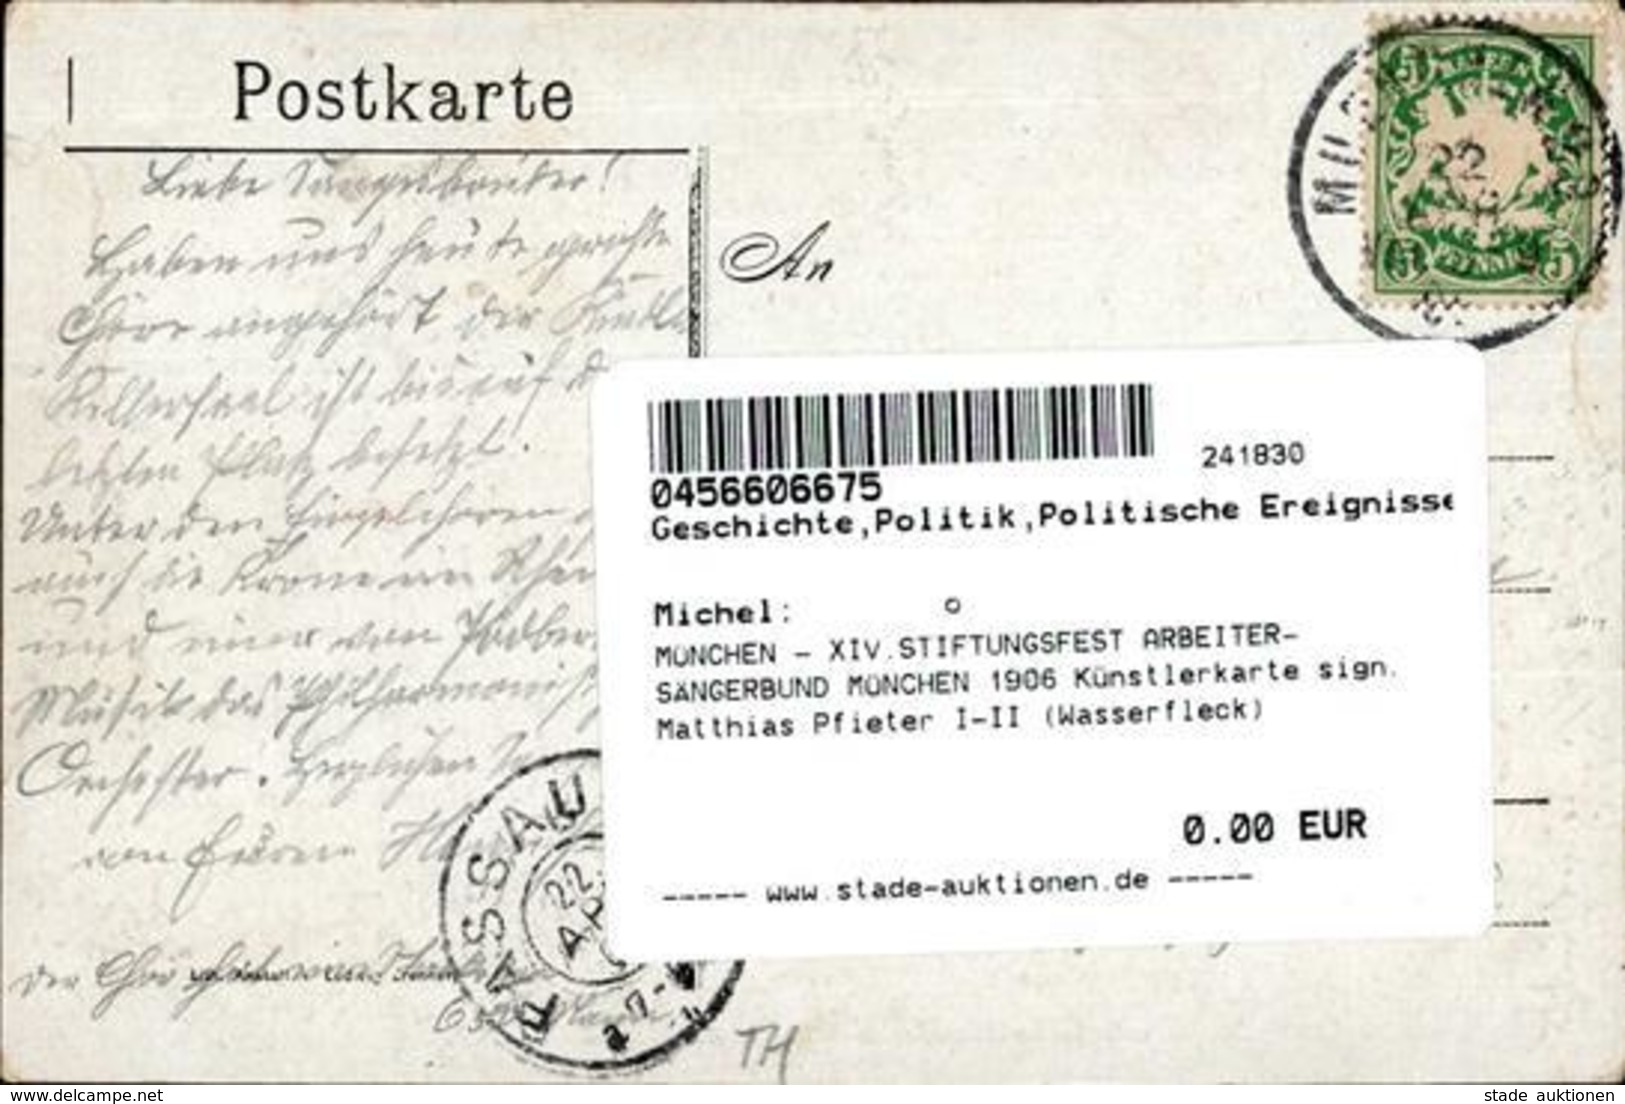 MÜNCHEN - XIV.STIFTUNGSFEST ARBEITER-SÄNGERBUND MÜNCHEN 1906 Künstlerkarte Sign. Matthias Pfieter I-II (Wasserfleck) - Ereignisse